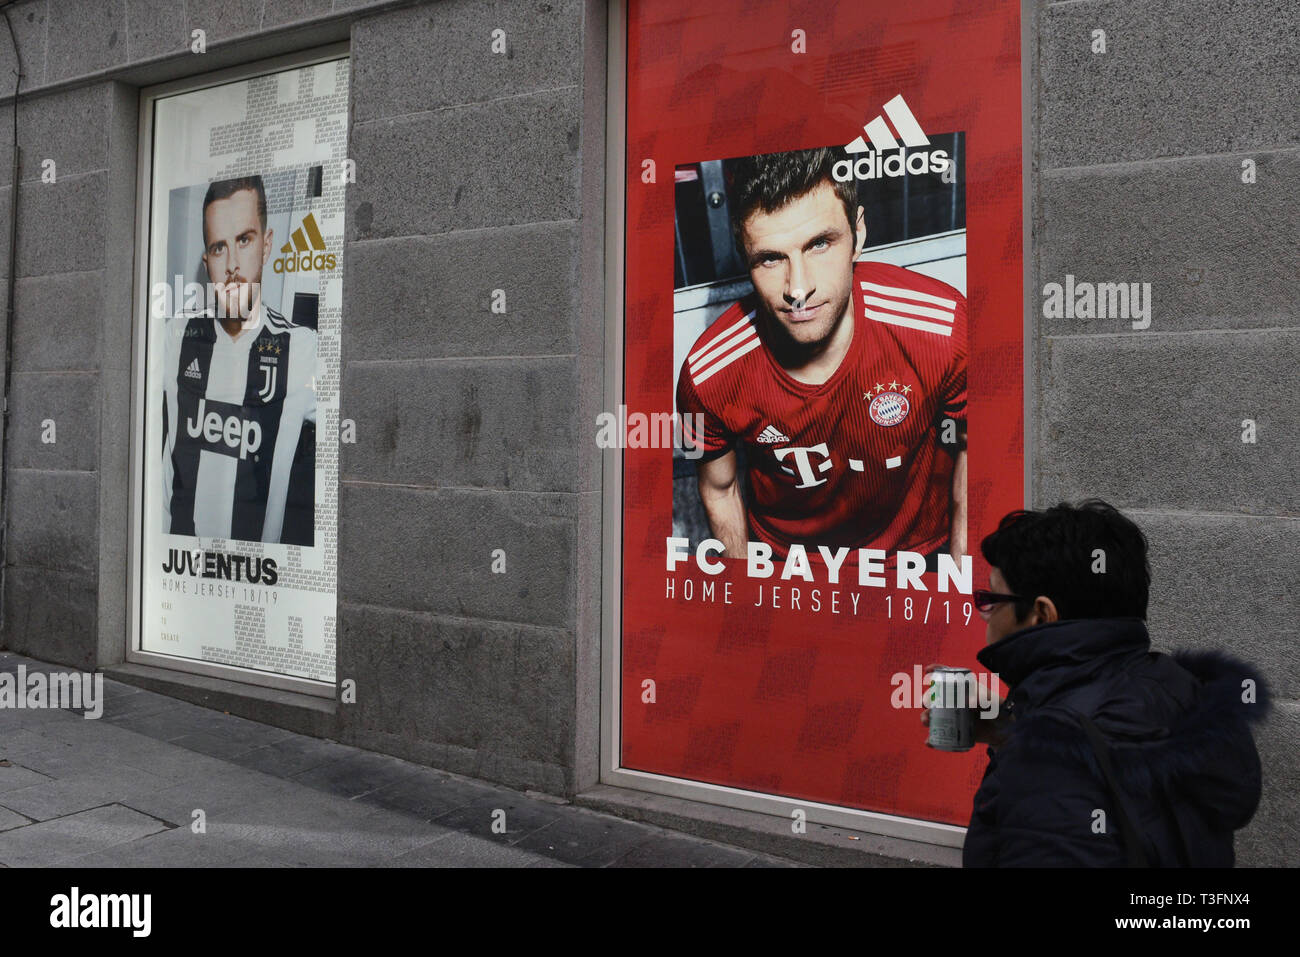 Madrid, Madrid, Spagna. 9 apr, 2019. Un annuncio pubblicitario Adidas visto  su un Adidas store in Madrid. Credito: John Milner/SOPA Immagini/ZUMA  filo/Alamy Live News Foto stock - Alamy